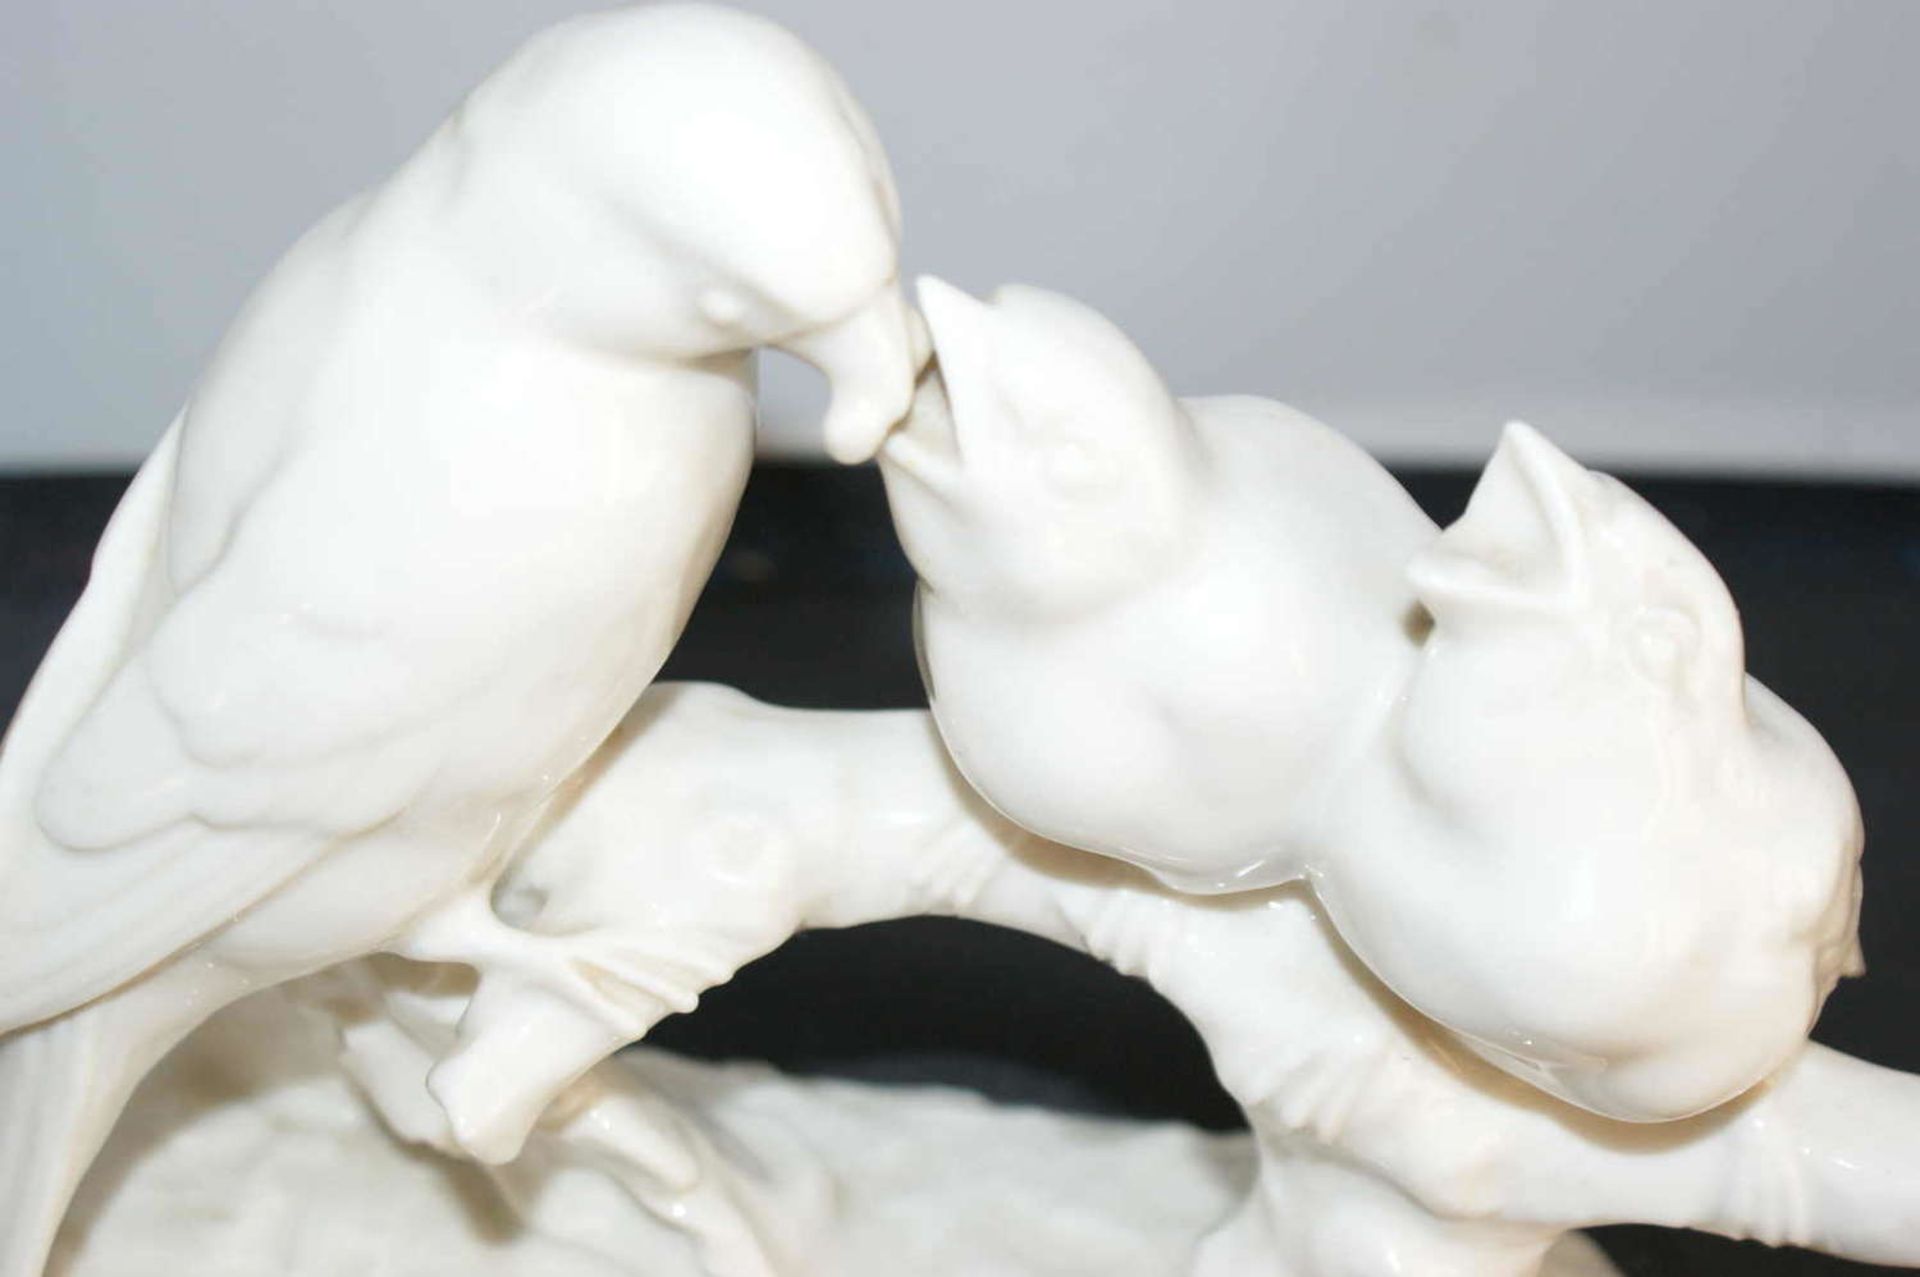 1 Hutschenreuther porcelain figure bird with 2 young birds feeding, sitting on a branch, white - Bild 2 aus 5